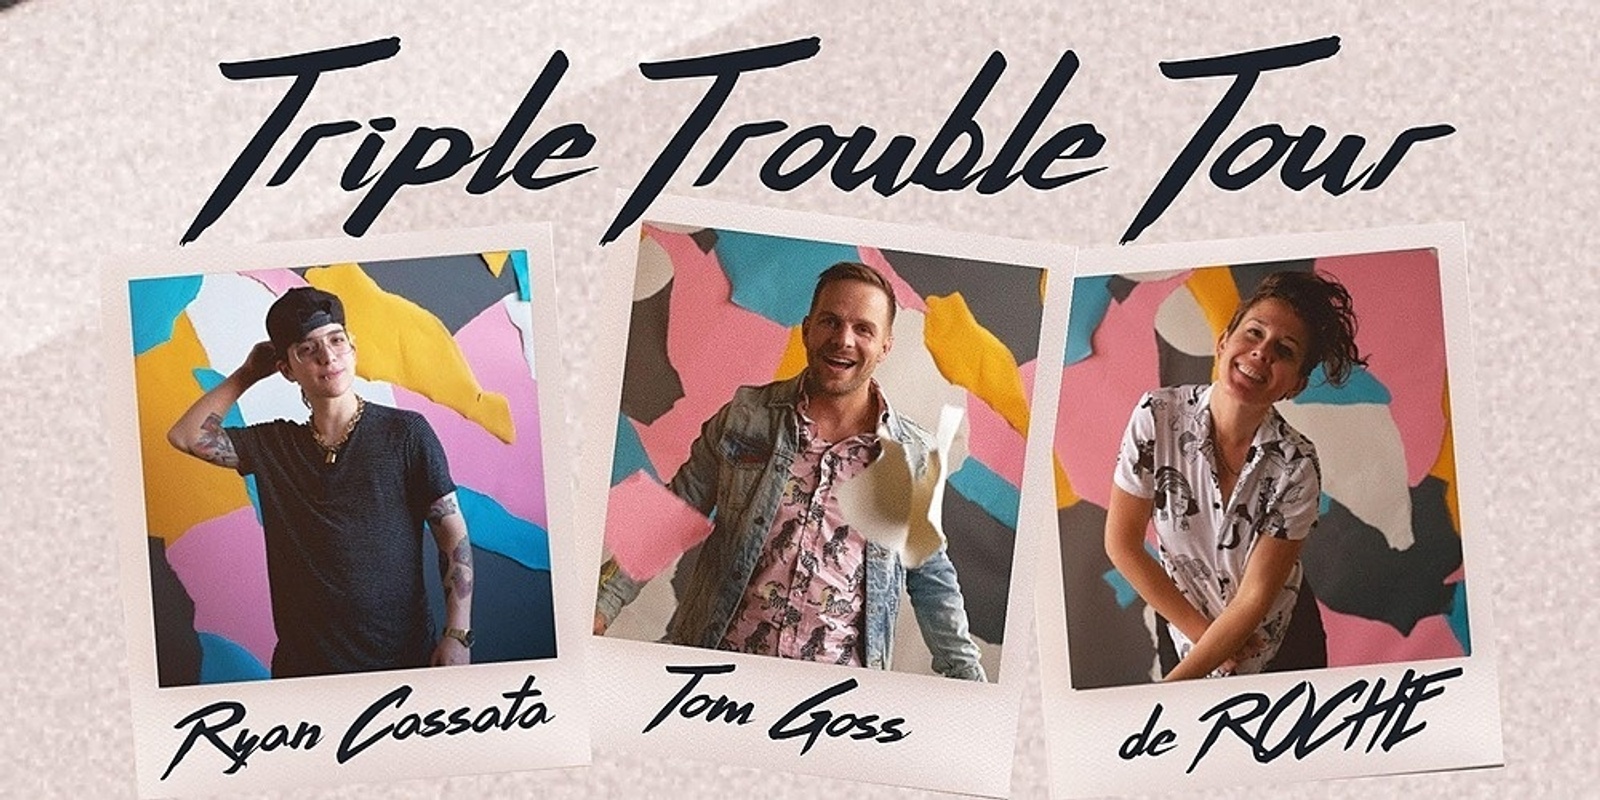 Banner image for Triple Trouble Tour: Ryan Cassata, Tom Goss & de ROCHE